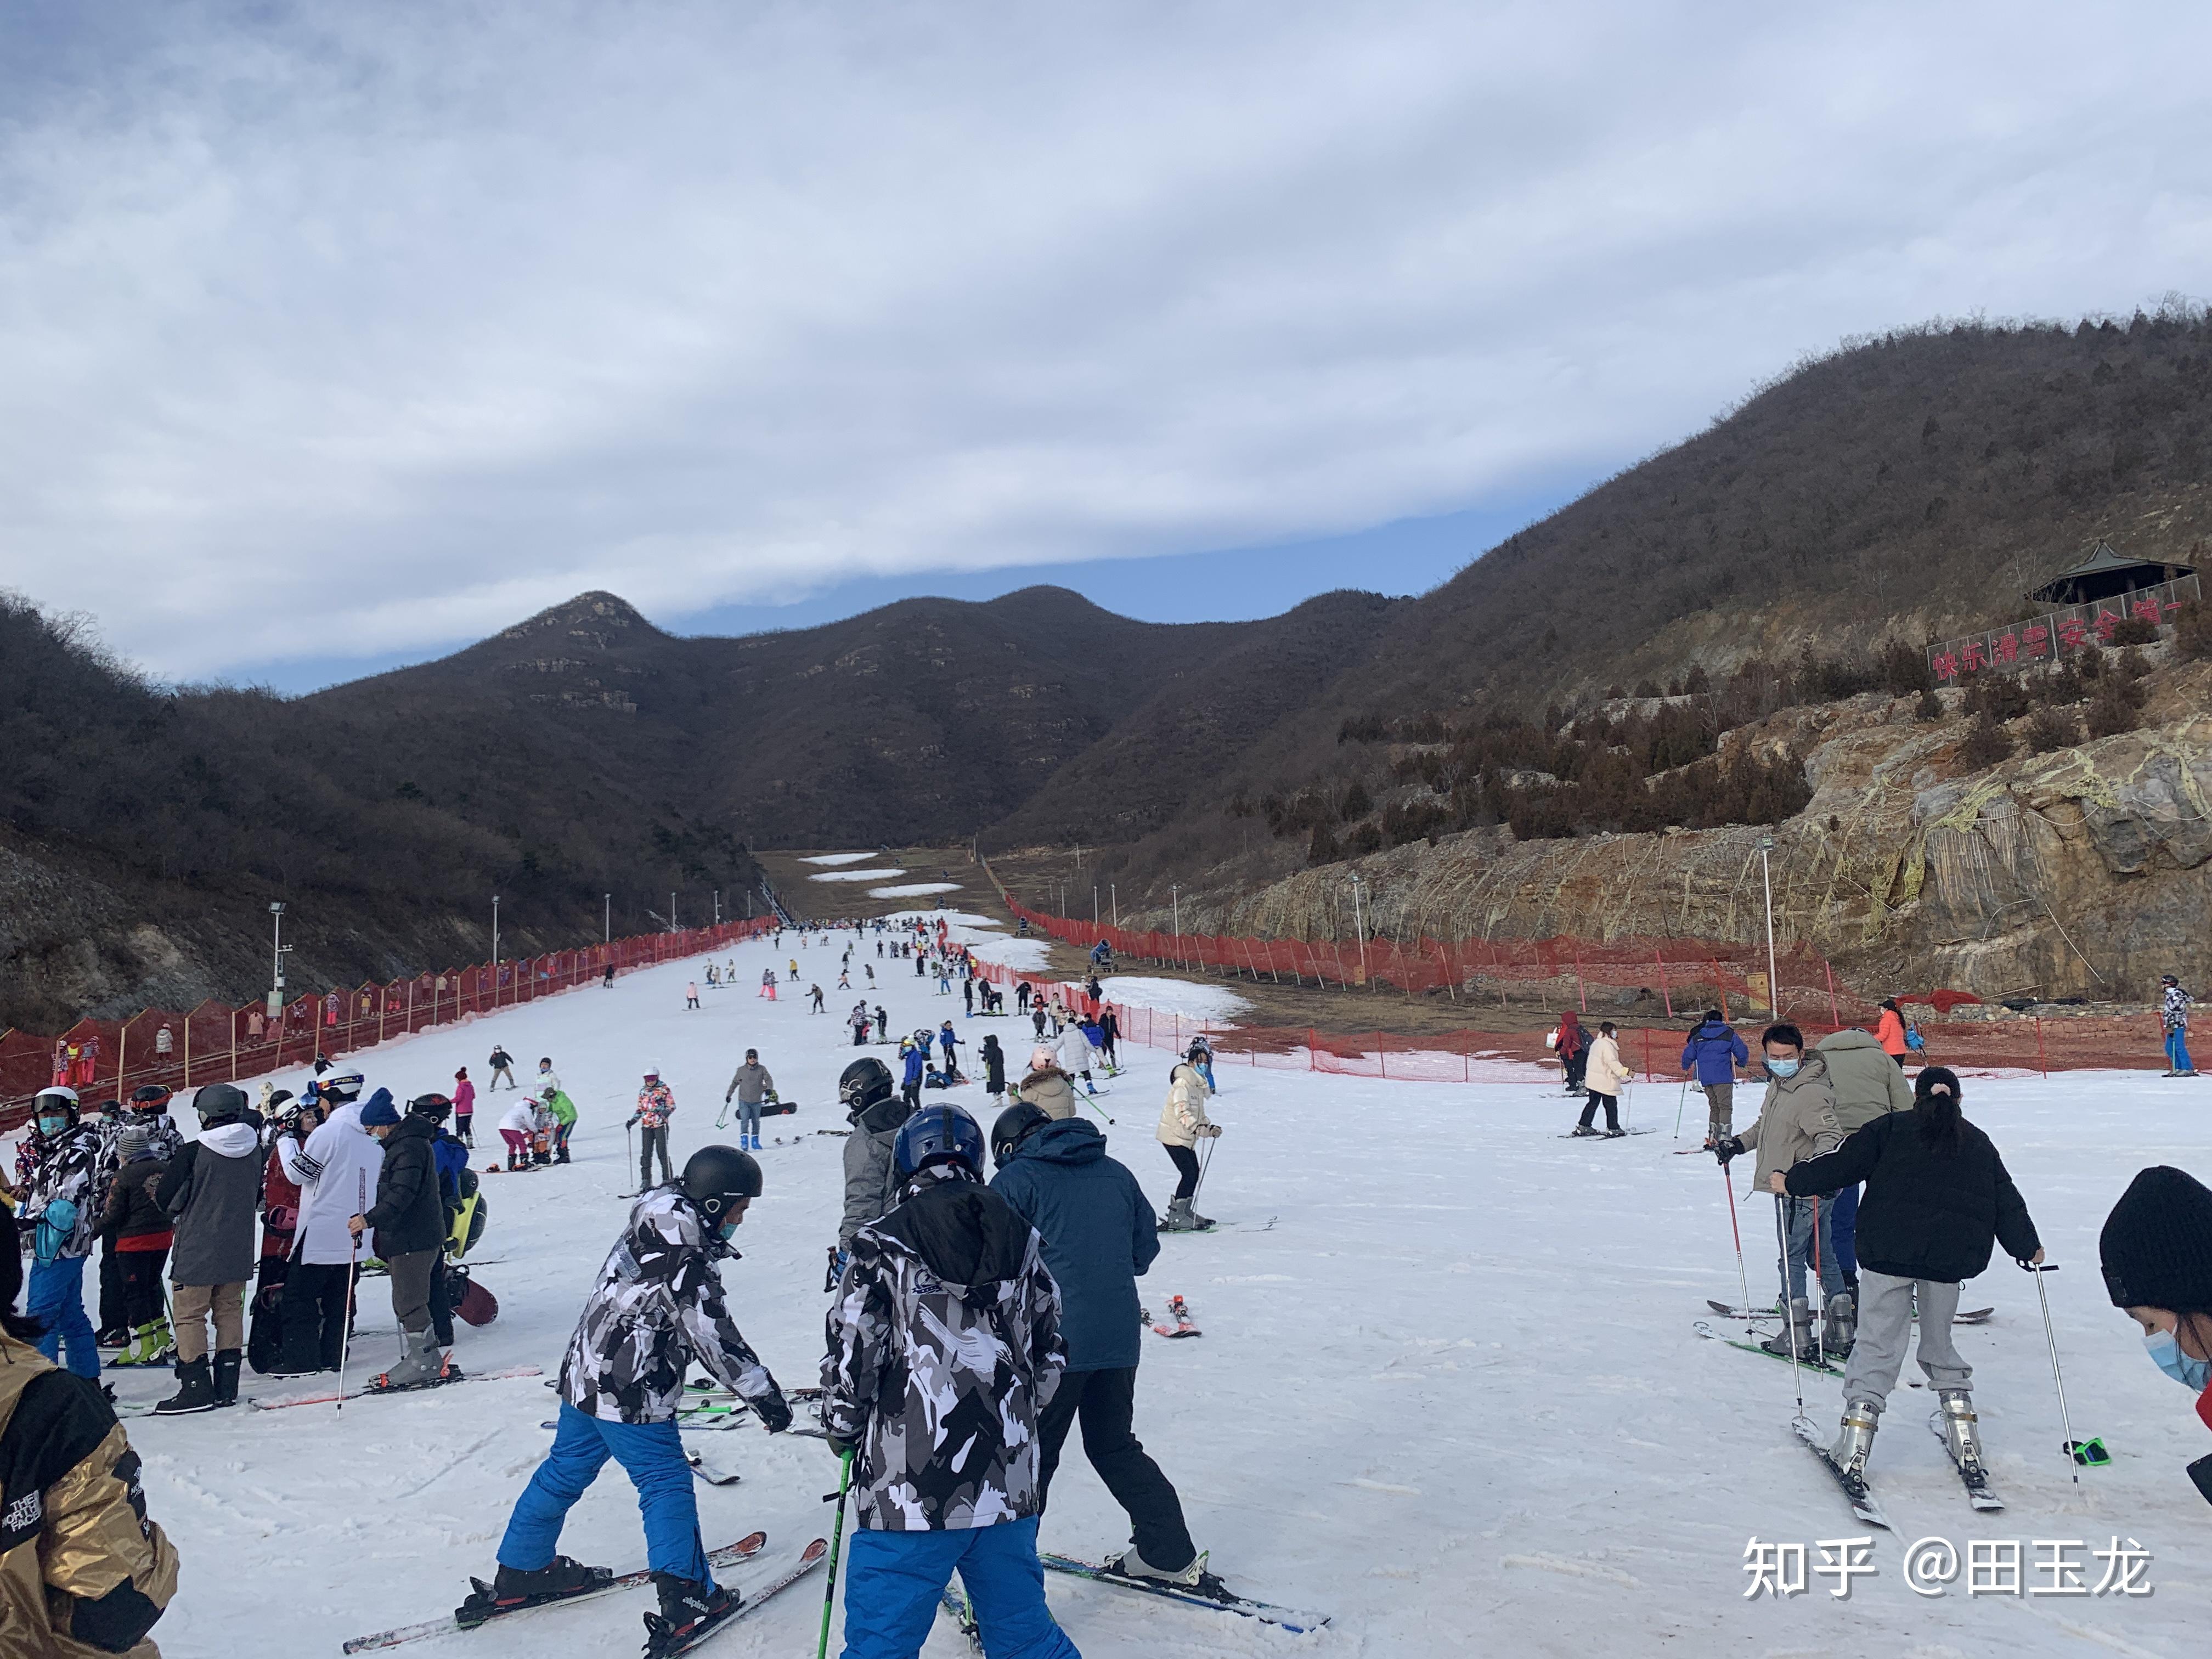 商旅活动场地解析——2021年静之湖滑雪场